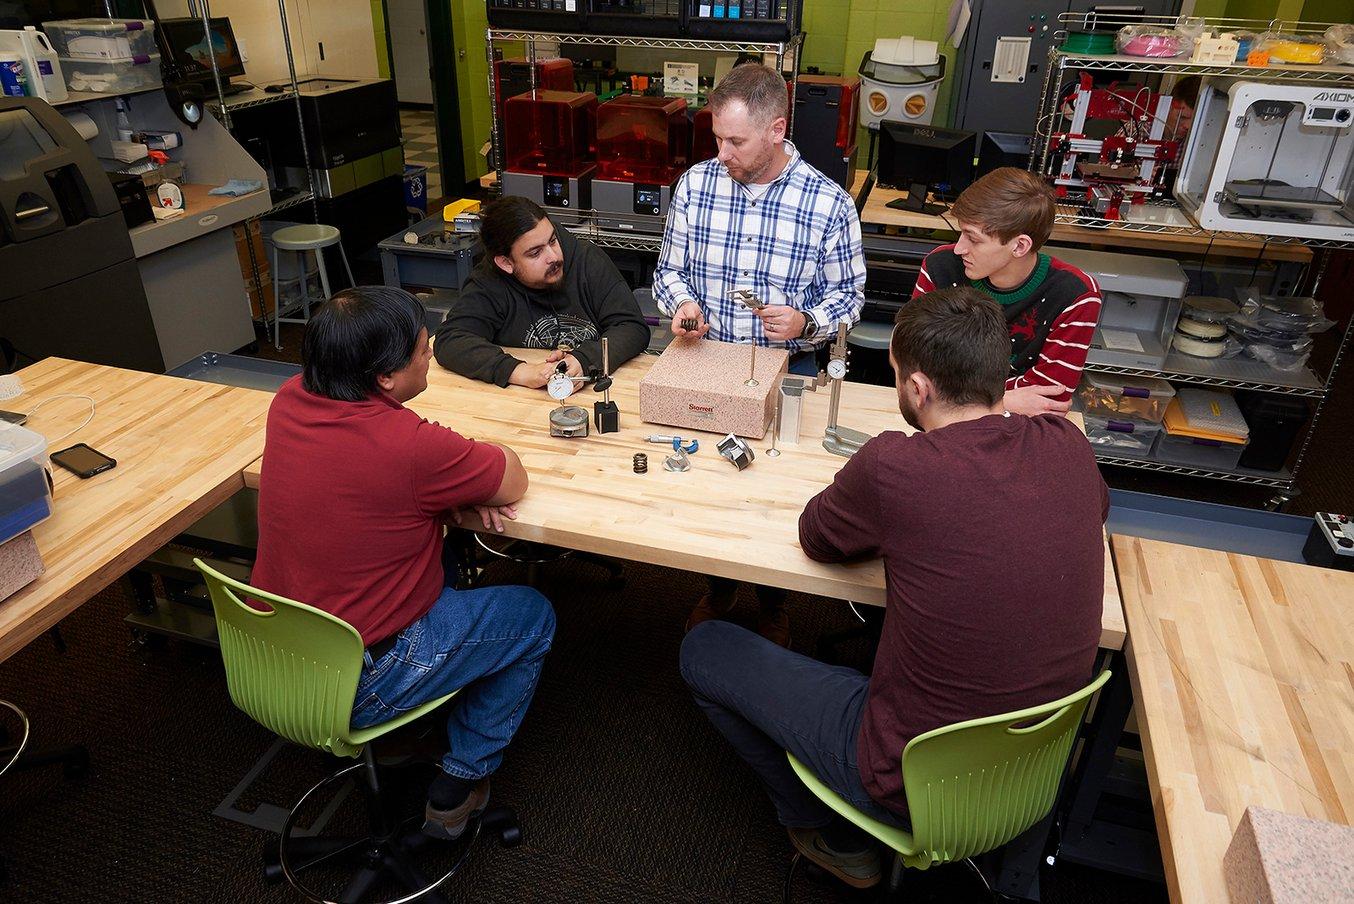 Un enseignant forme des étudiants à l'aide d'outils pédagogiques imprimés en 3D